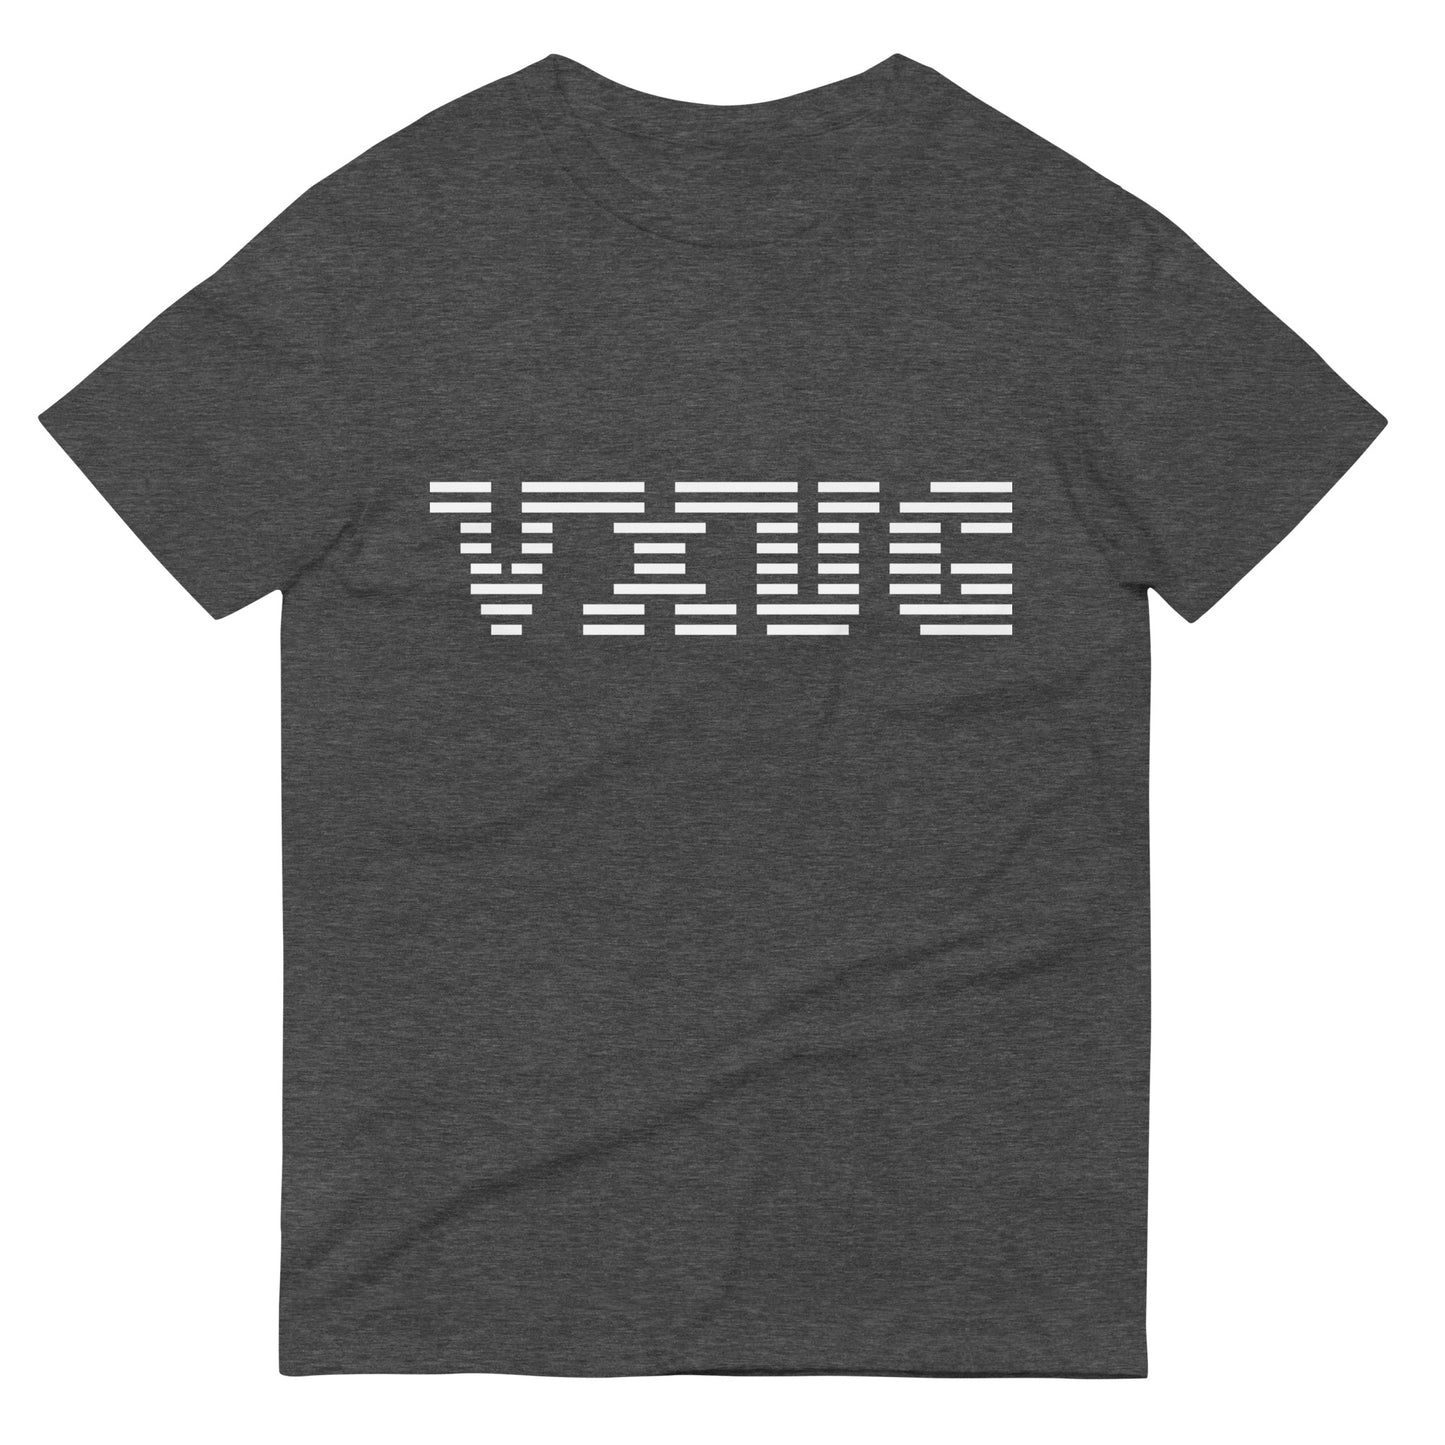 VXUG Corpoate Short-Sleeve Unisex T-Shirt